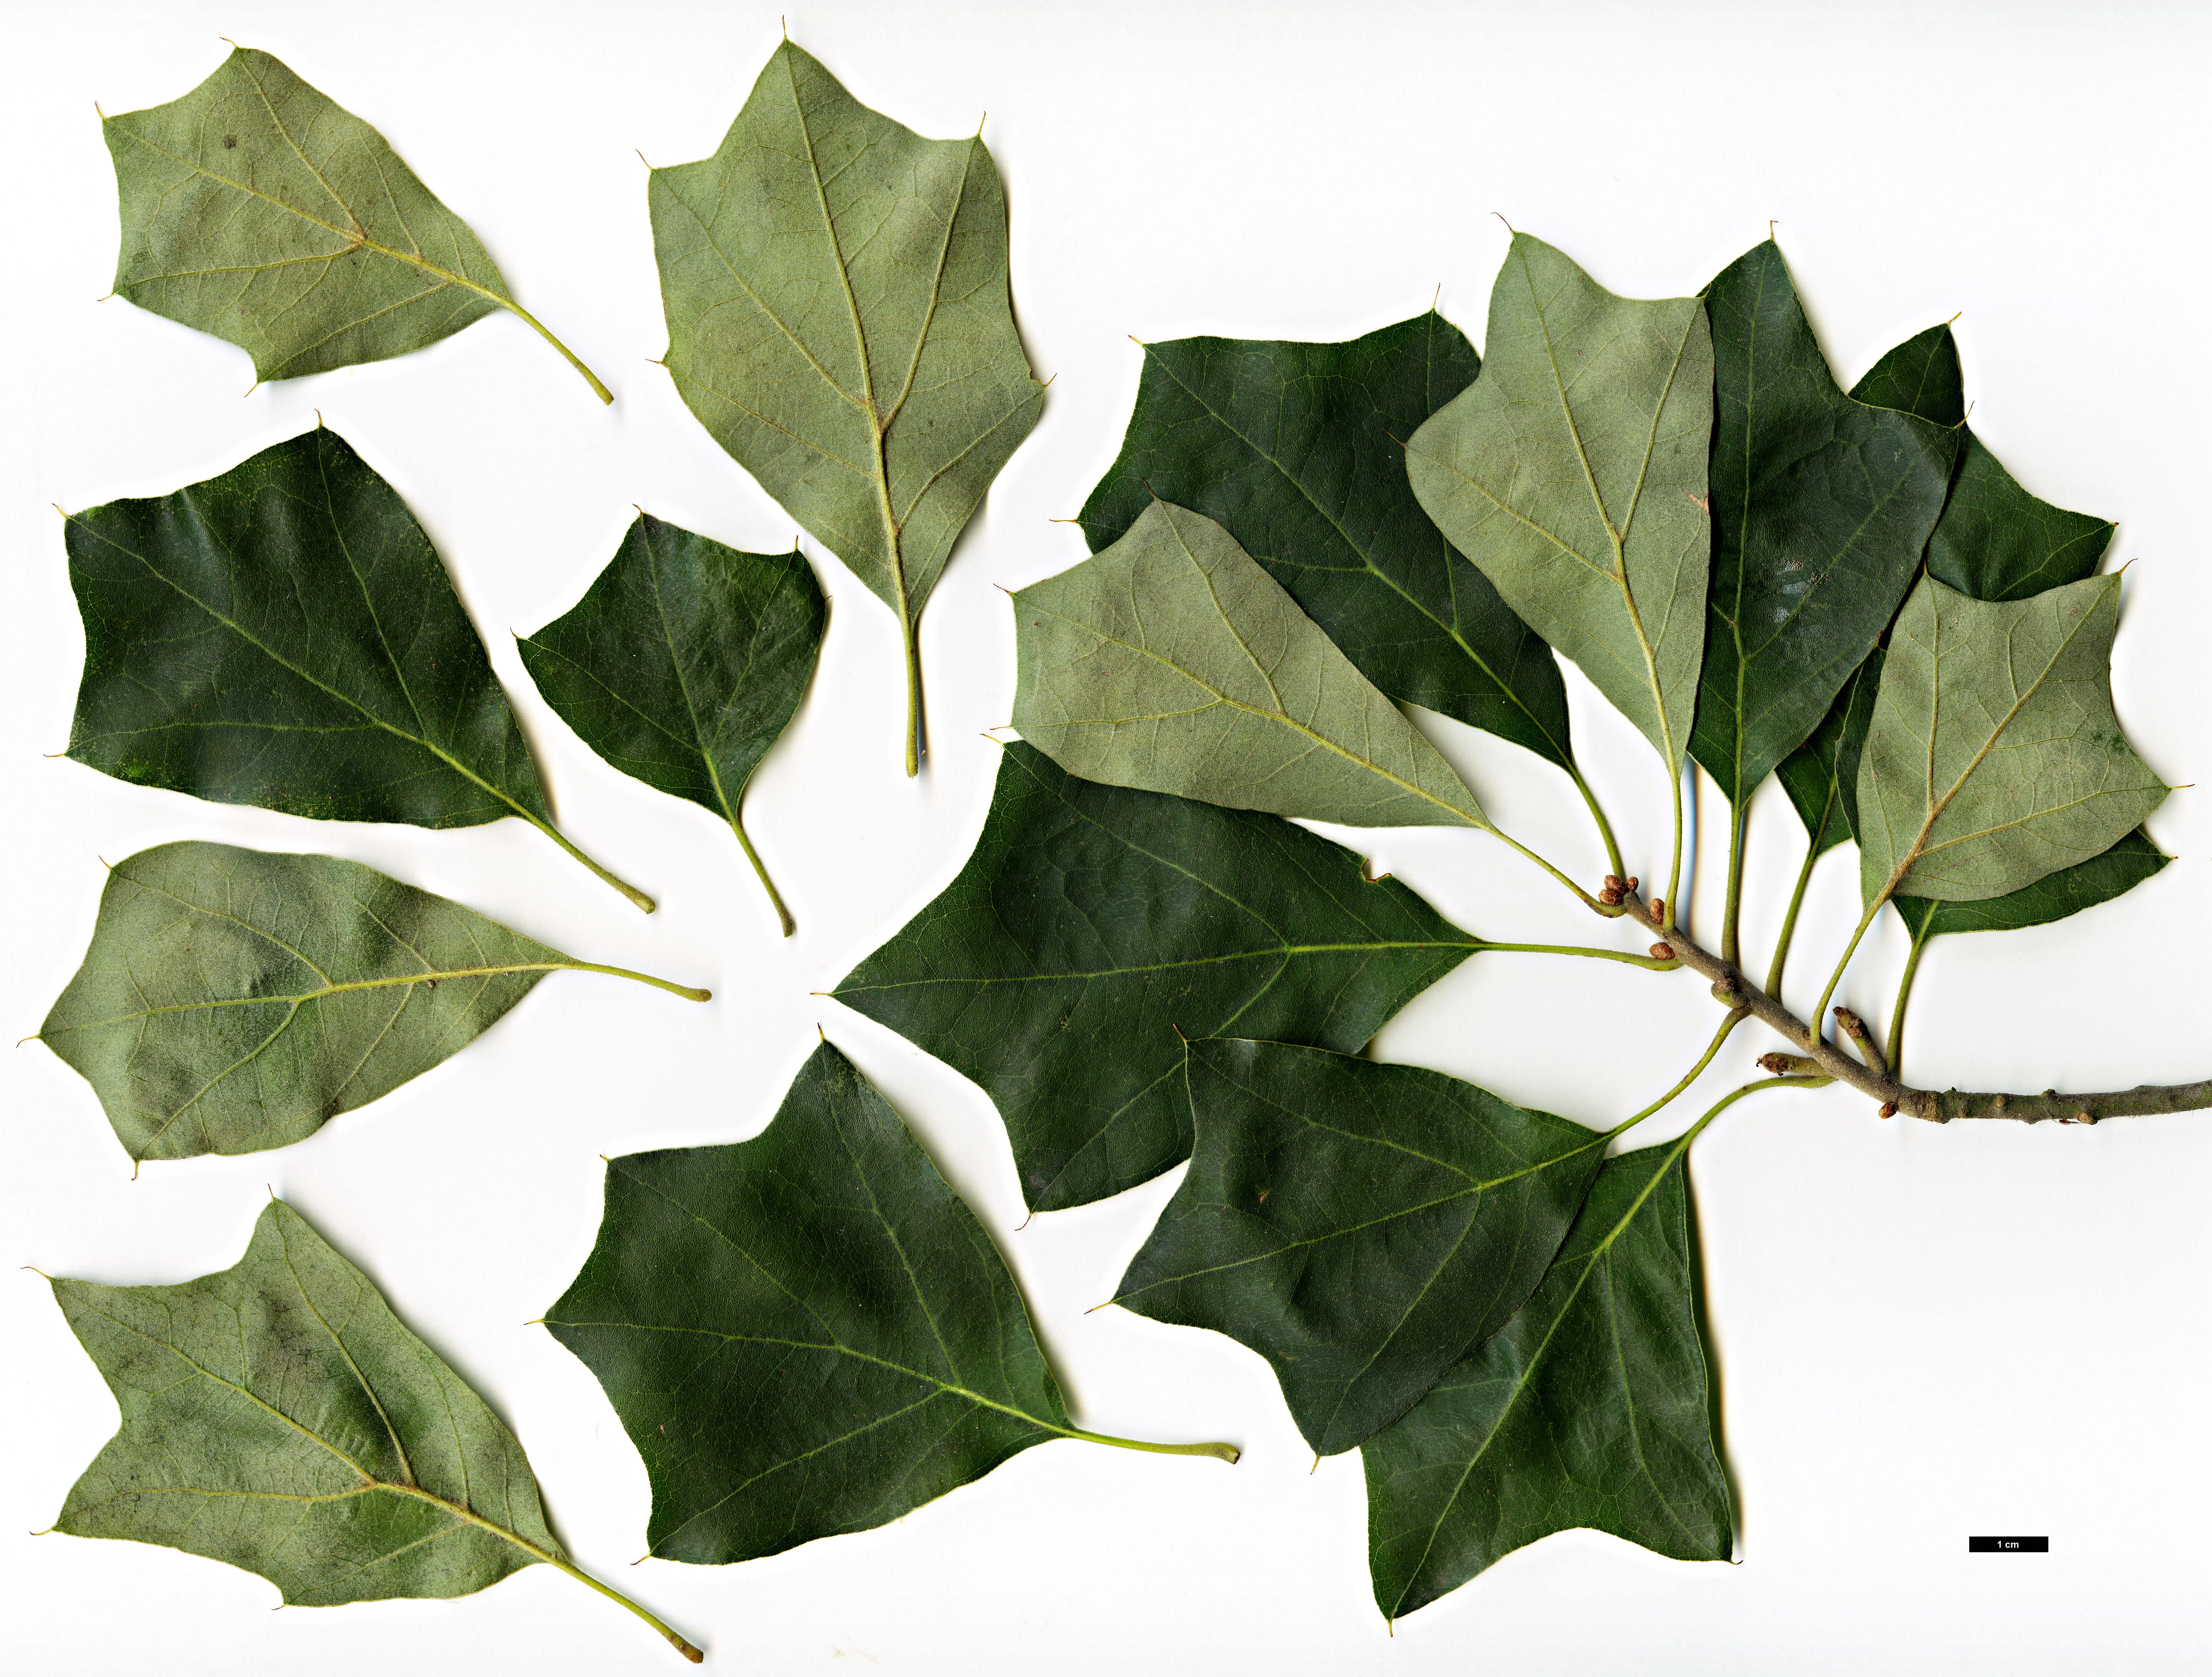 High resolution image: Family: Fagaceae - Genus: Quercus - Taxon: ×brittonii (Q.ilicifolia × Q.marilandica)